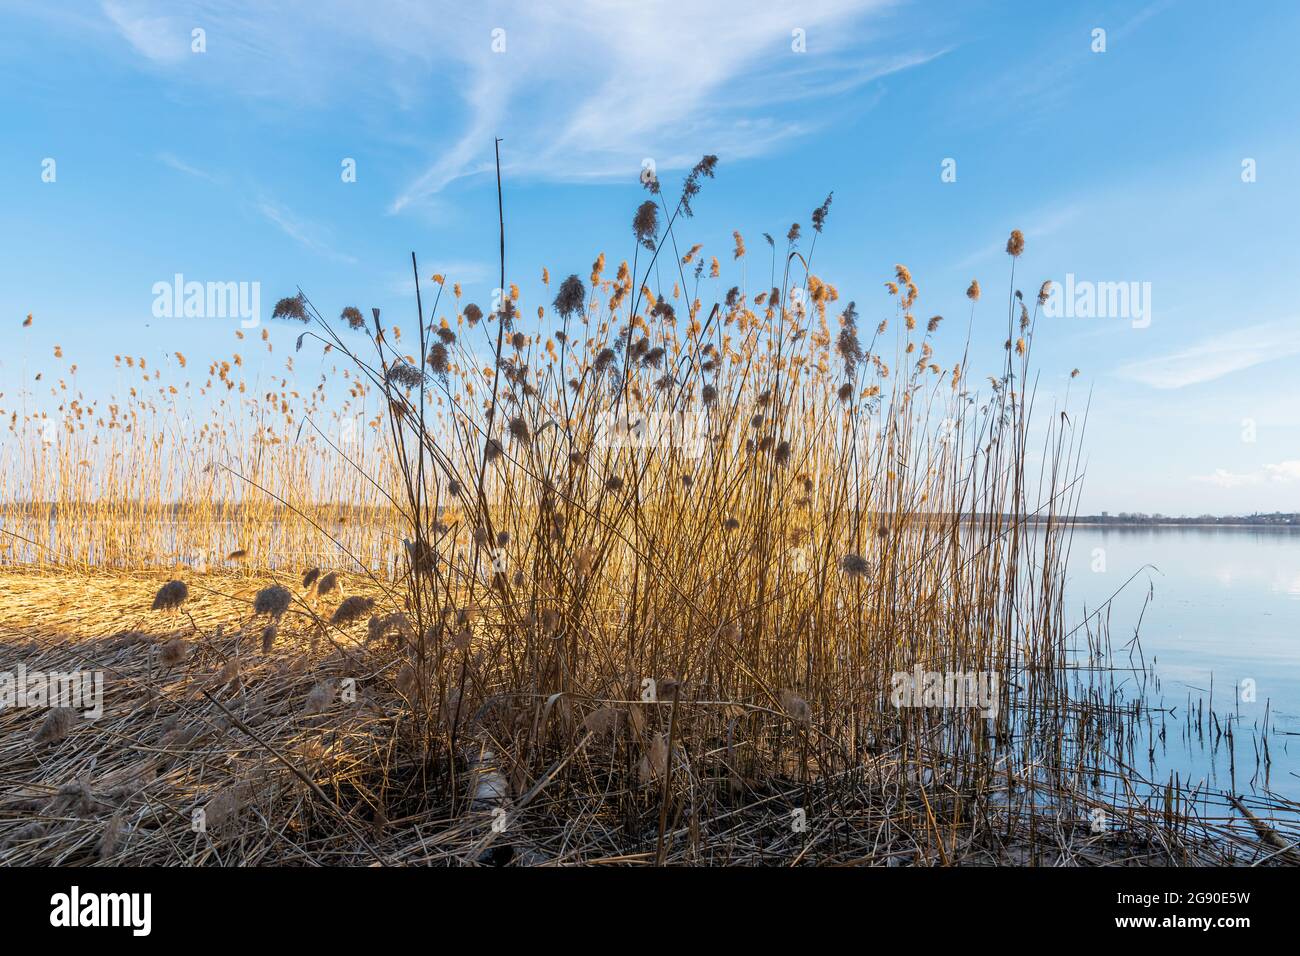 Gruppo di arrugamenti essiccati nelle prime primaverili che crescono vicino al lago. Foresta sull'altro lato del lago. Cielo blu e nuvoloso. Imielin, Slesia, Polonia. Foto Stock